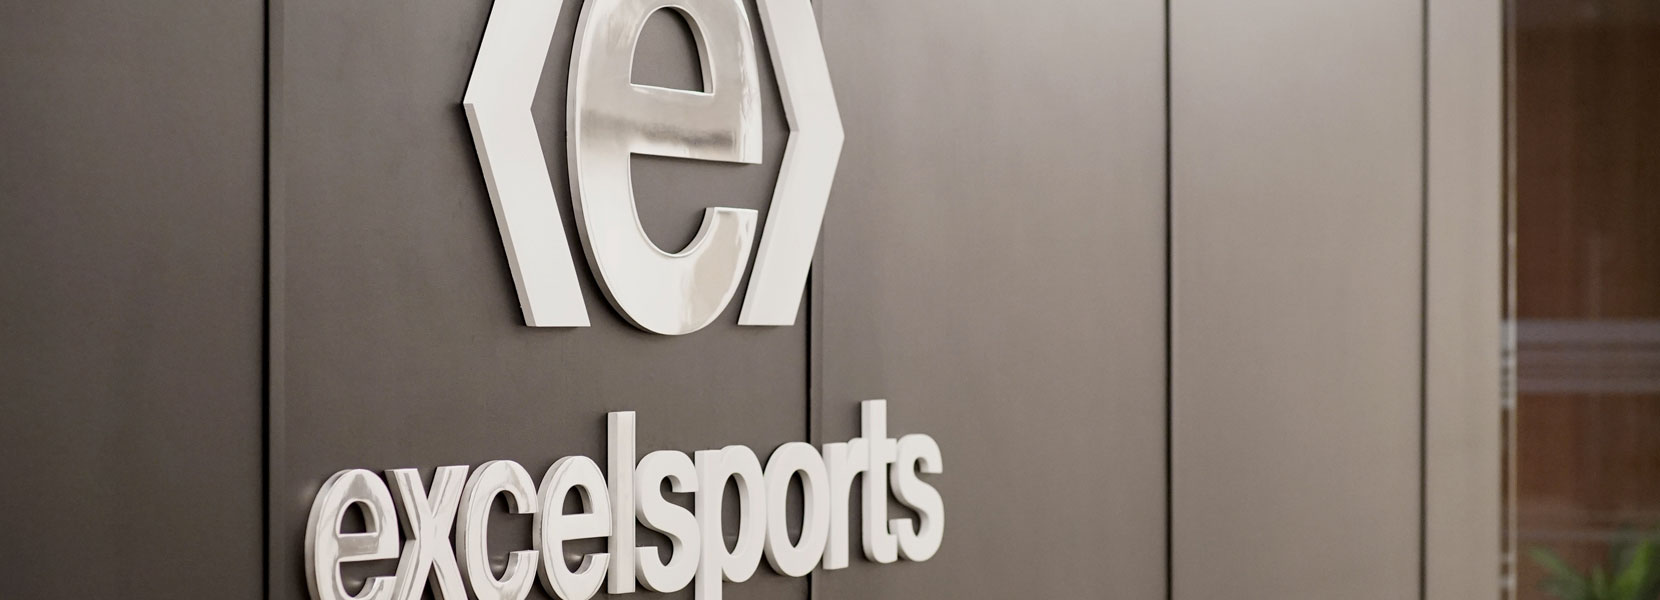 Banner image of Excel Sports Management logo